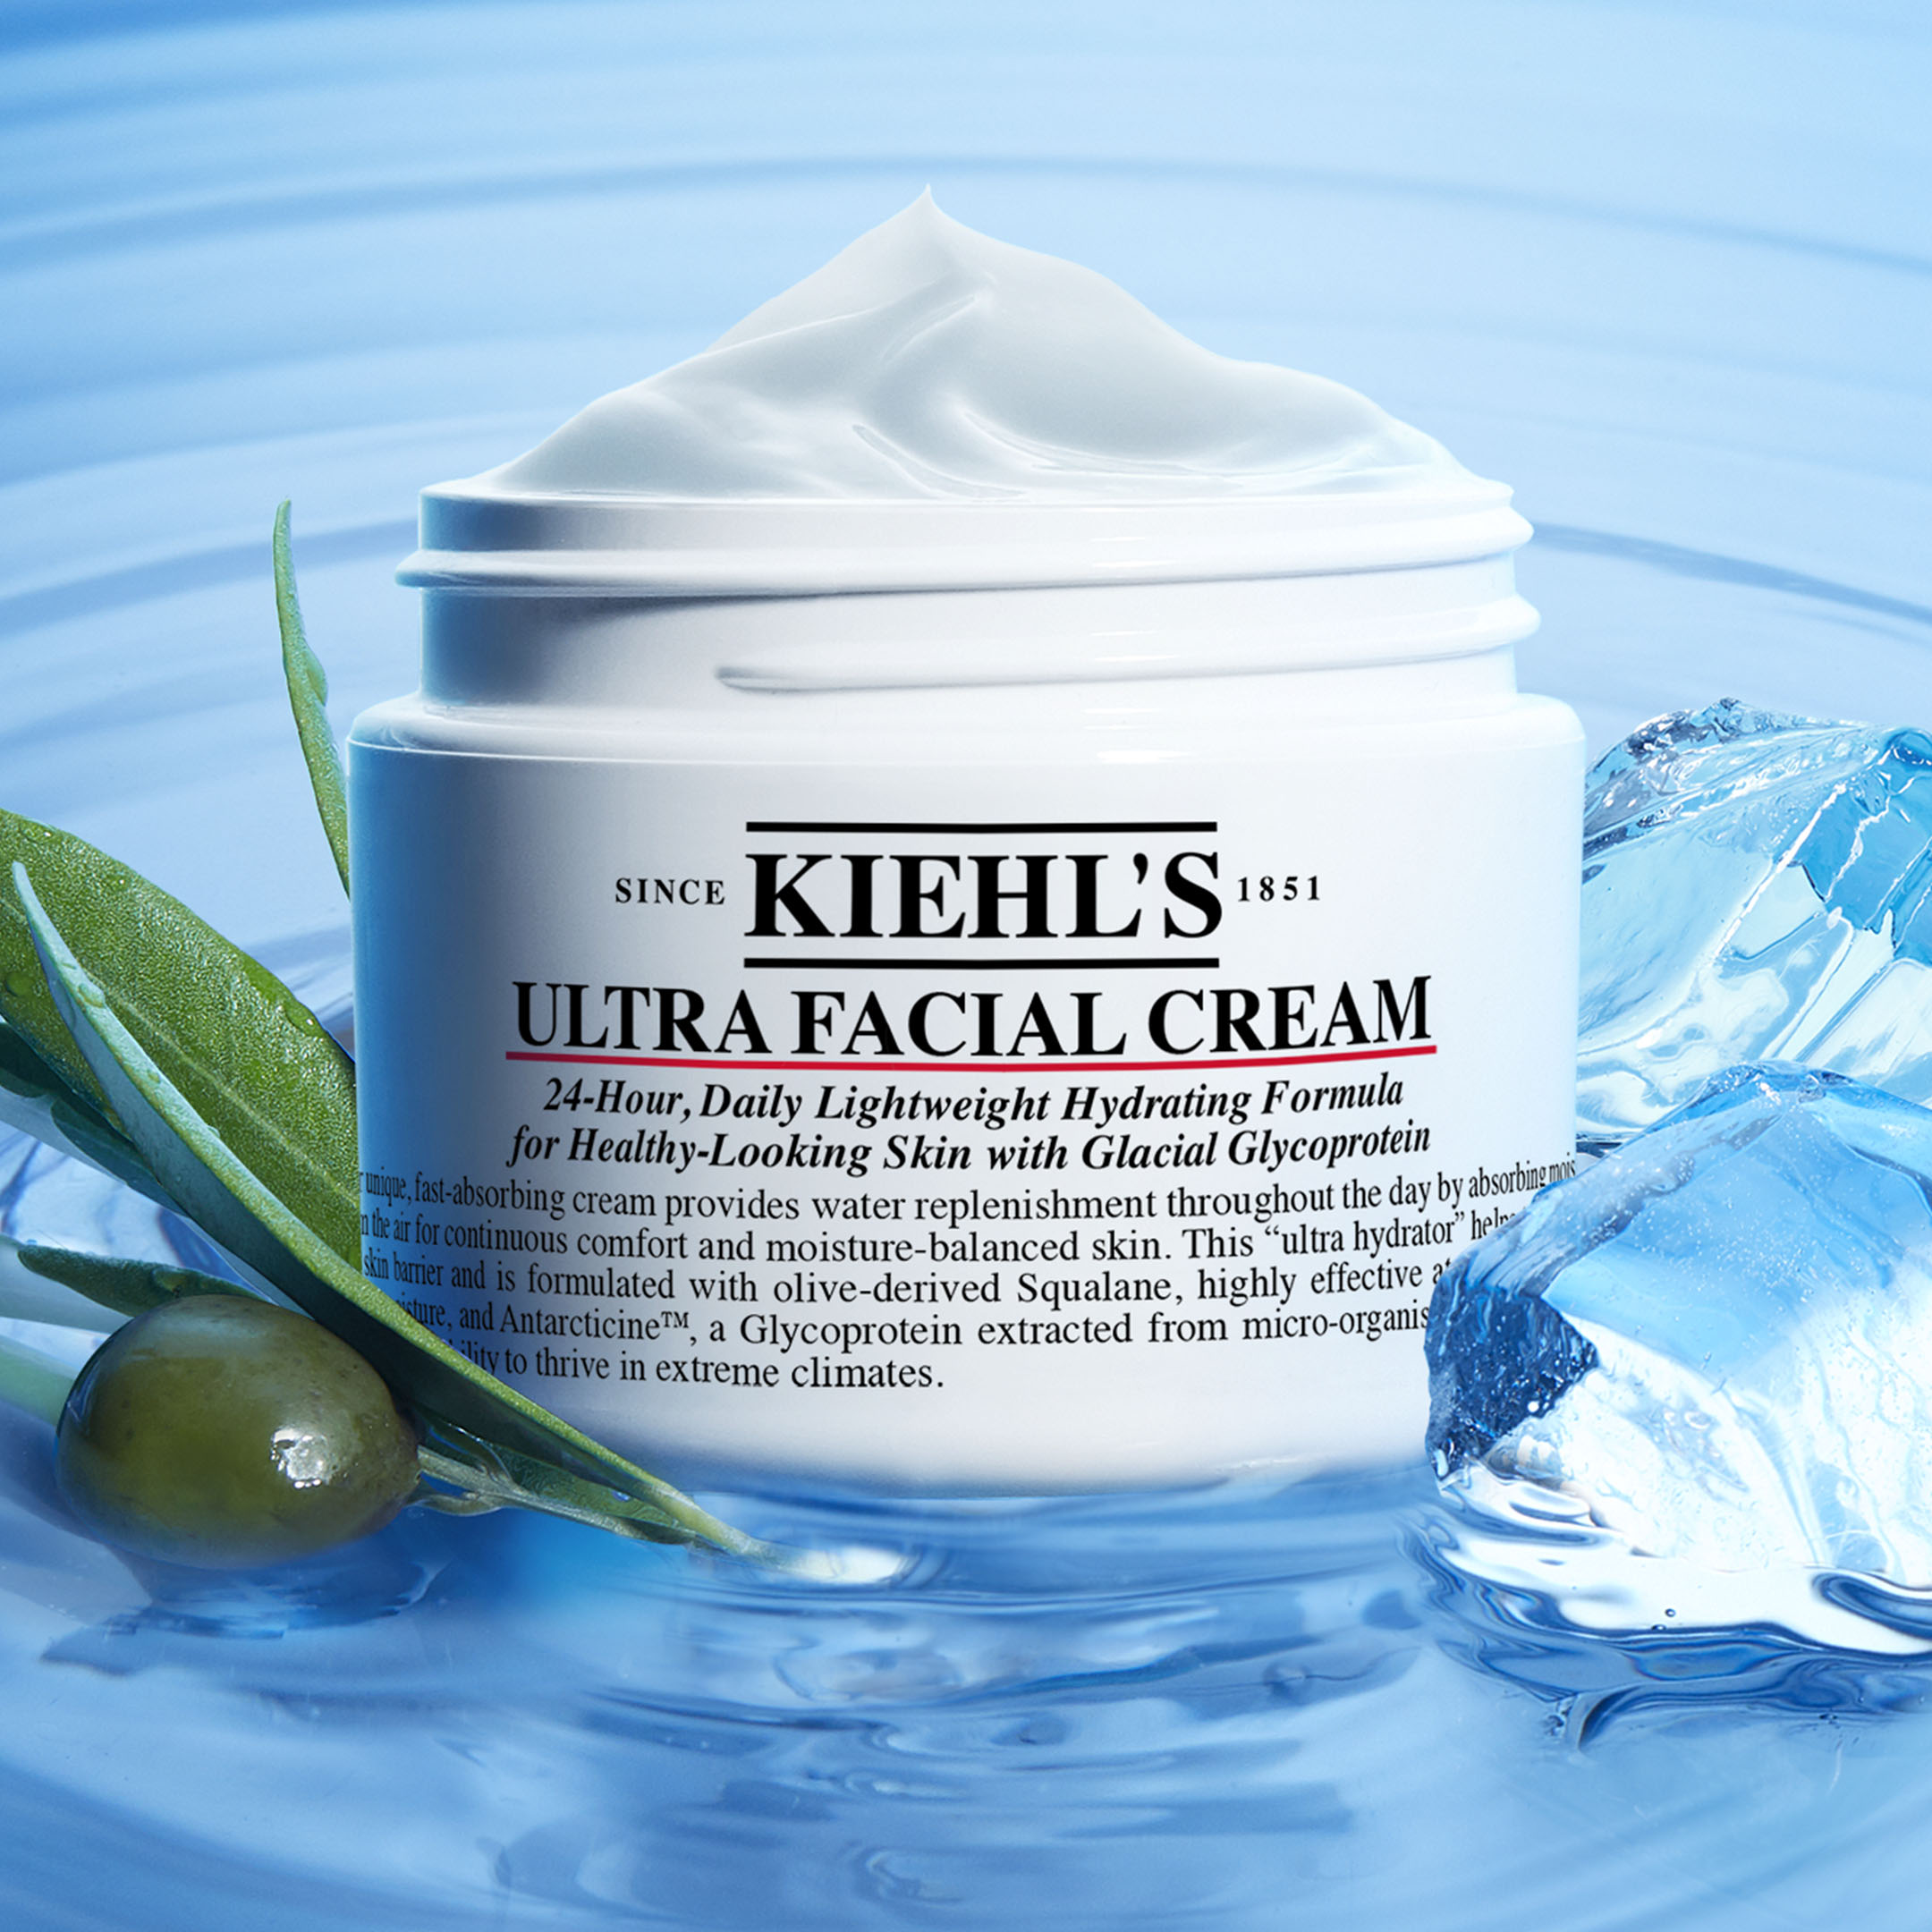 Kiehls Nuova Ultra Facial Cream - info, review, recensione, prezzo, dove acquistare, data uscita - 3